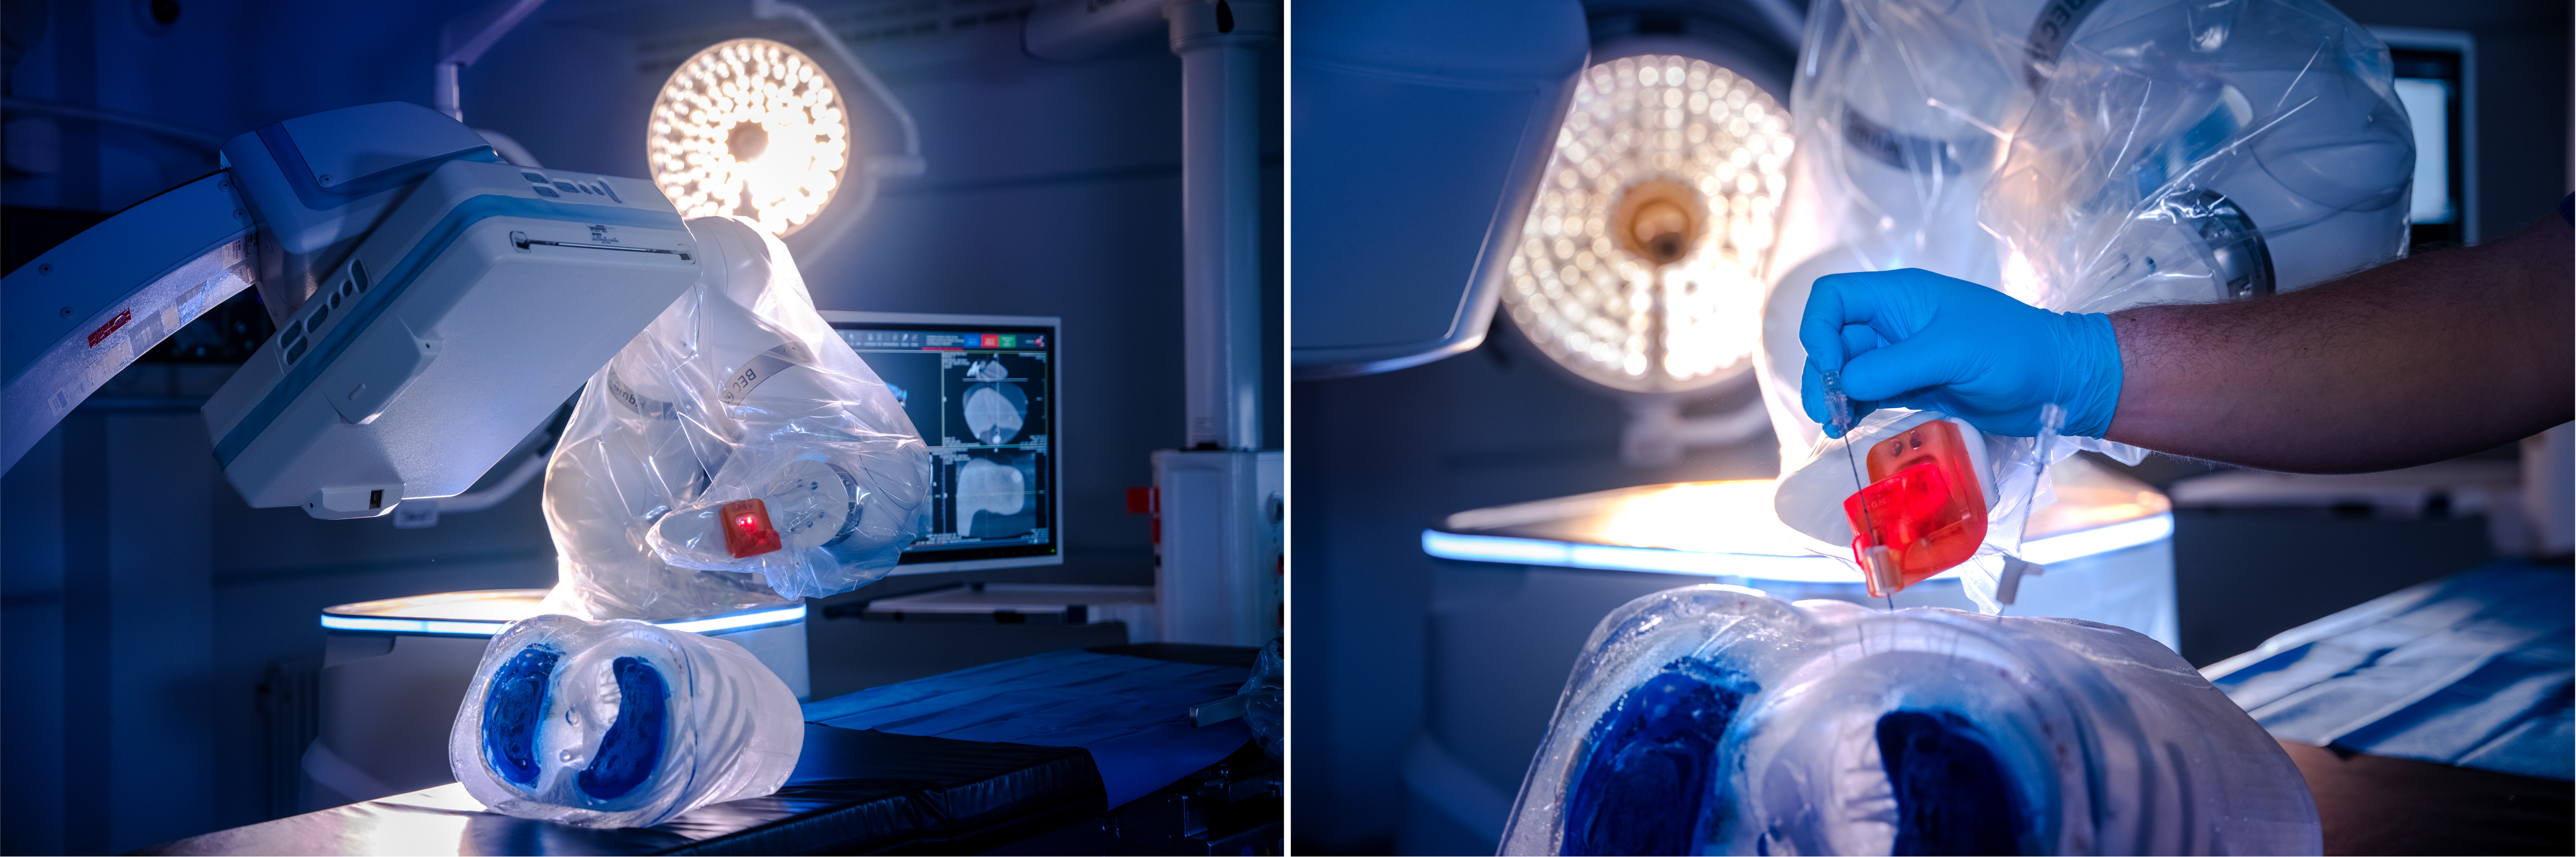 Links ist der Roboterarm in der Nähe eines auf dem Operationstisch liegenden künstlichen Torso zu sehen und darüber ein Teil des Computertomografen. Rechts die Hand von guidoo und zwei im Torso platzierte Führungshülsen, durch die eine Hand im blauen Handschuh eine Biopsienadel sticht.